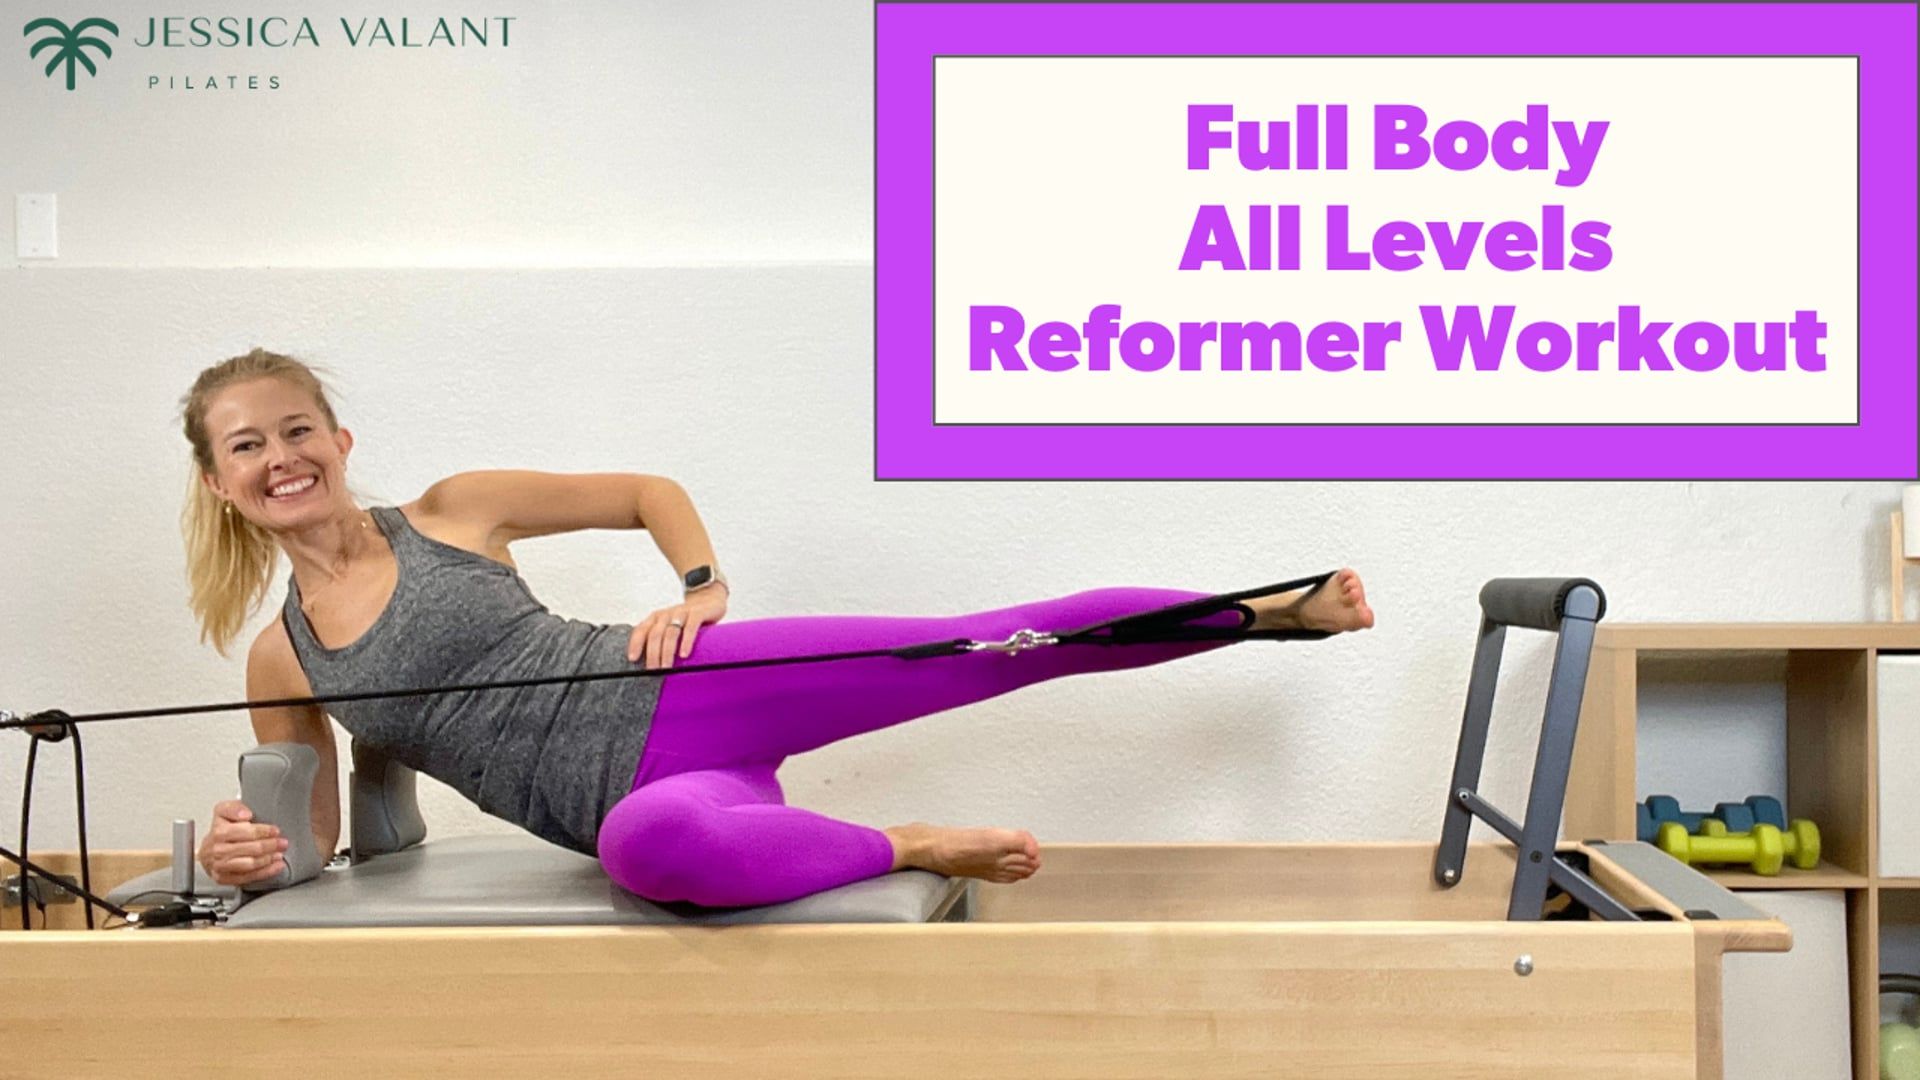 Pilates Reformer Workout, Full Body